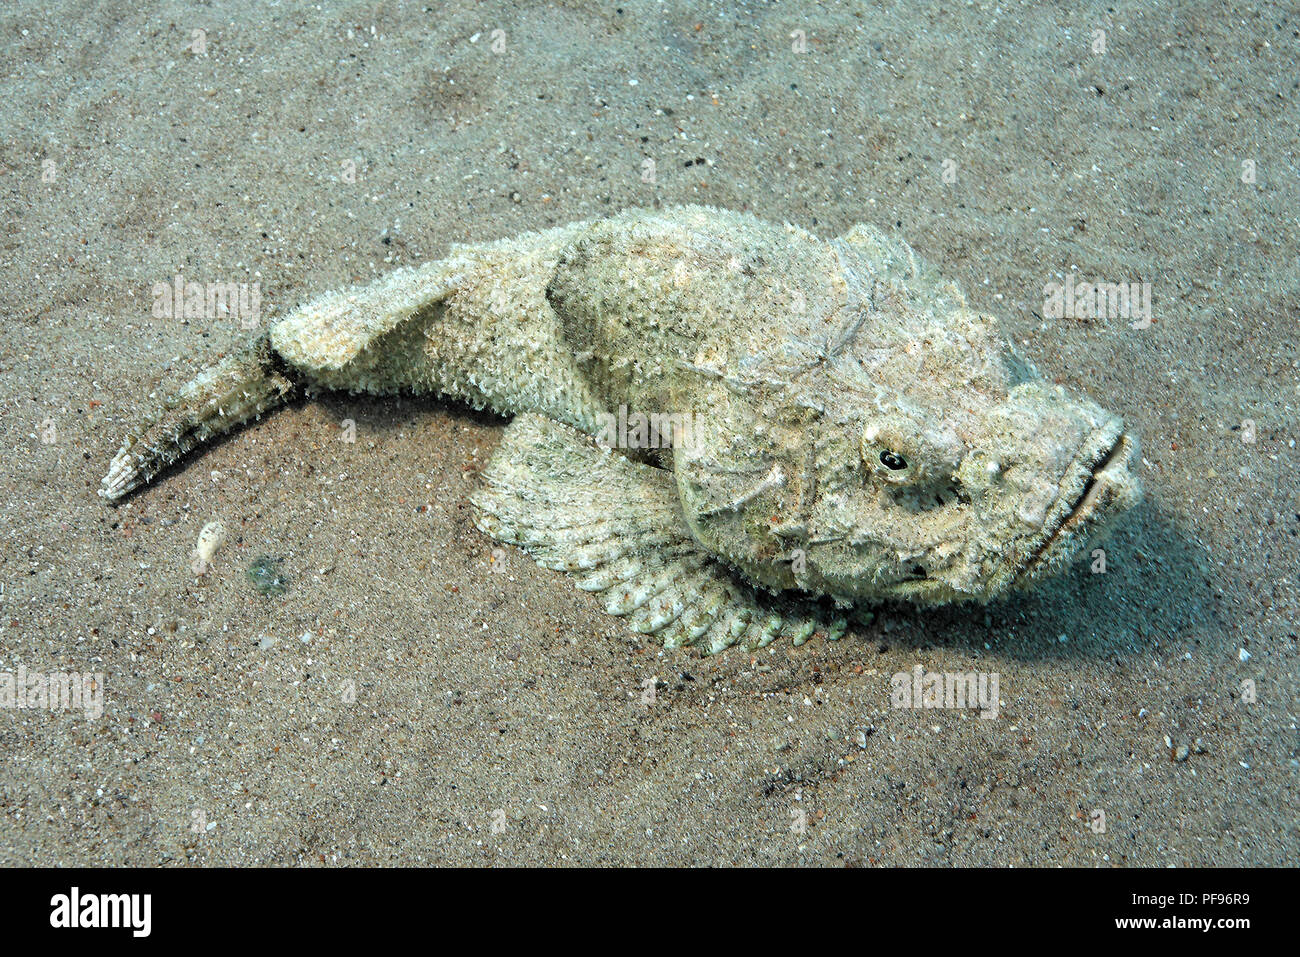 Falscher Steinfisch, Buckelwale Scorpionsfish oder Teufel Drachenkopf (Scorpaenopsis diabolus) Festlegung auf sandigen Meeresboden, Sinai, Ägypten Stockfoto